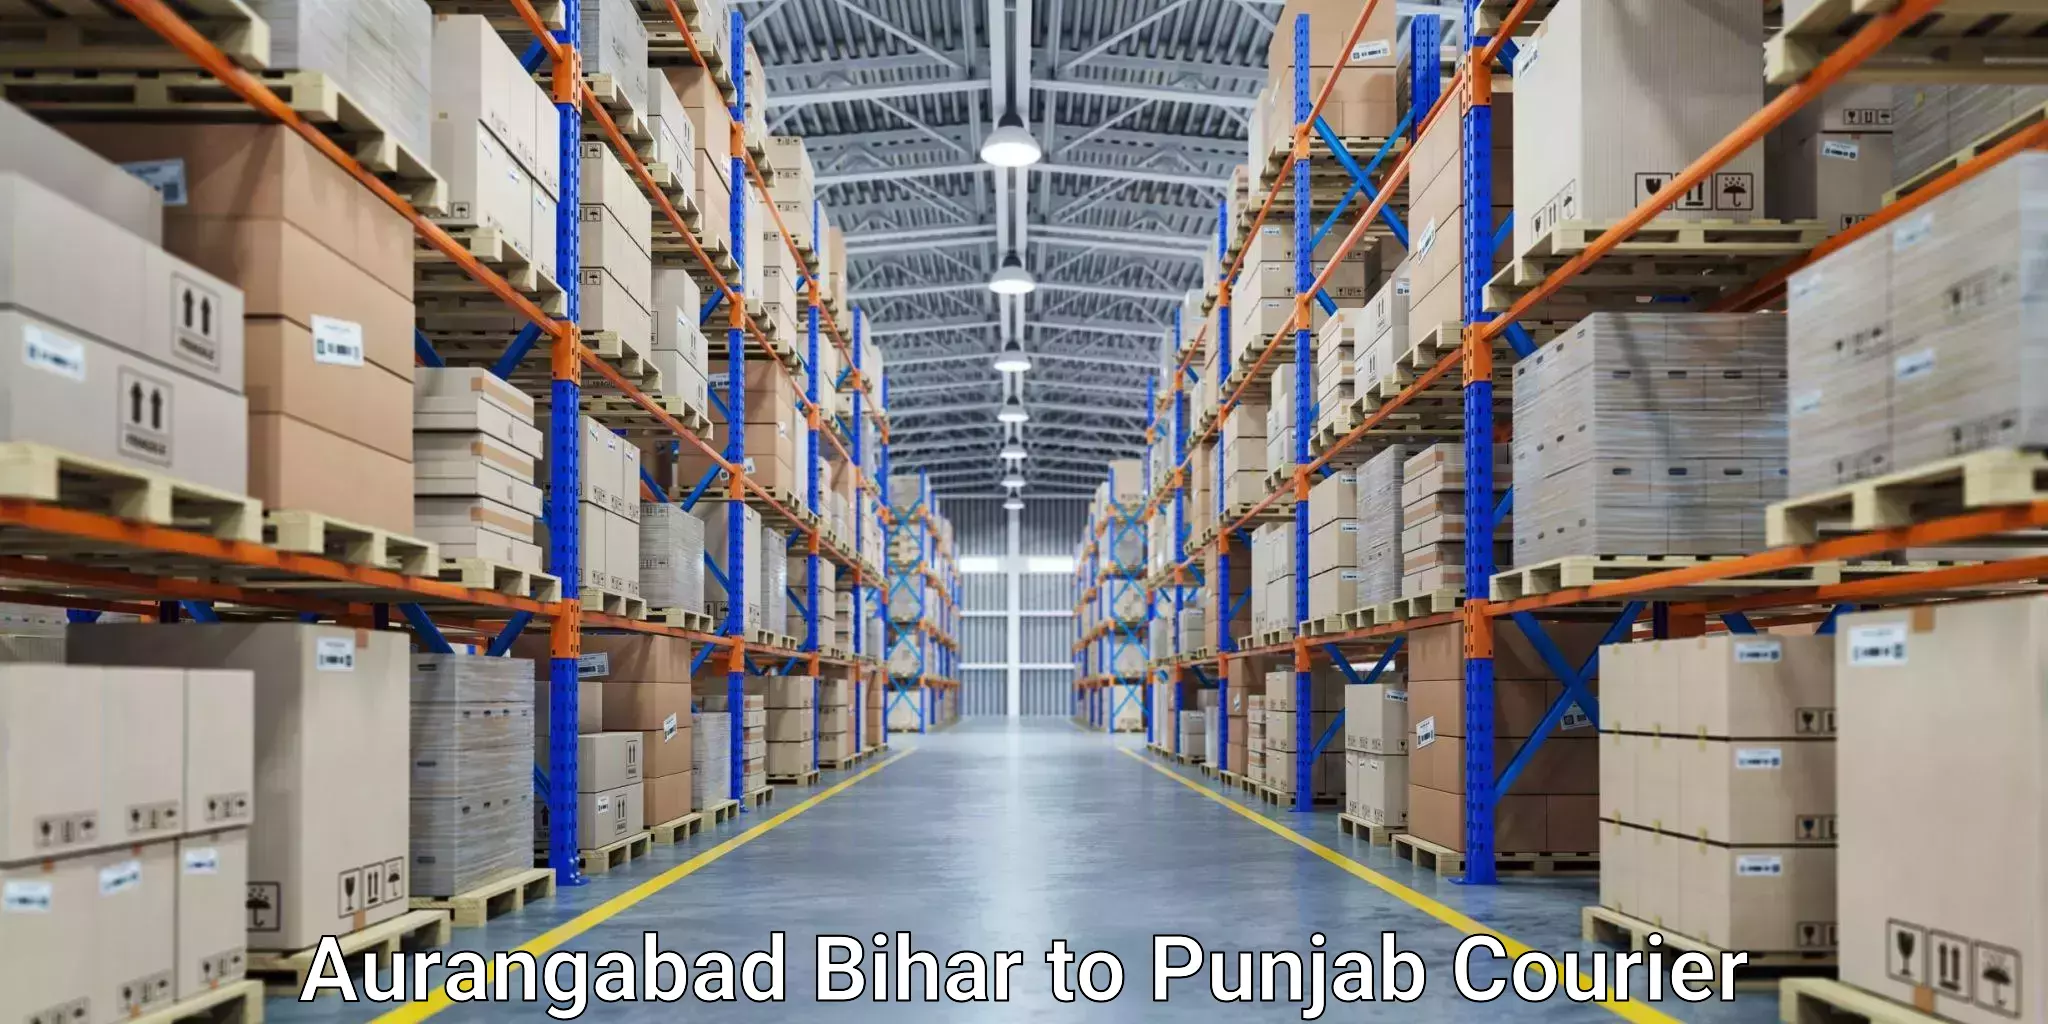 24-hour courier service in Aurangabad Bihar to Patiala